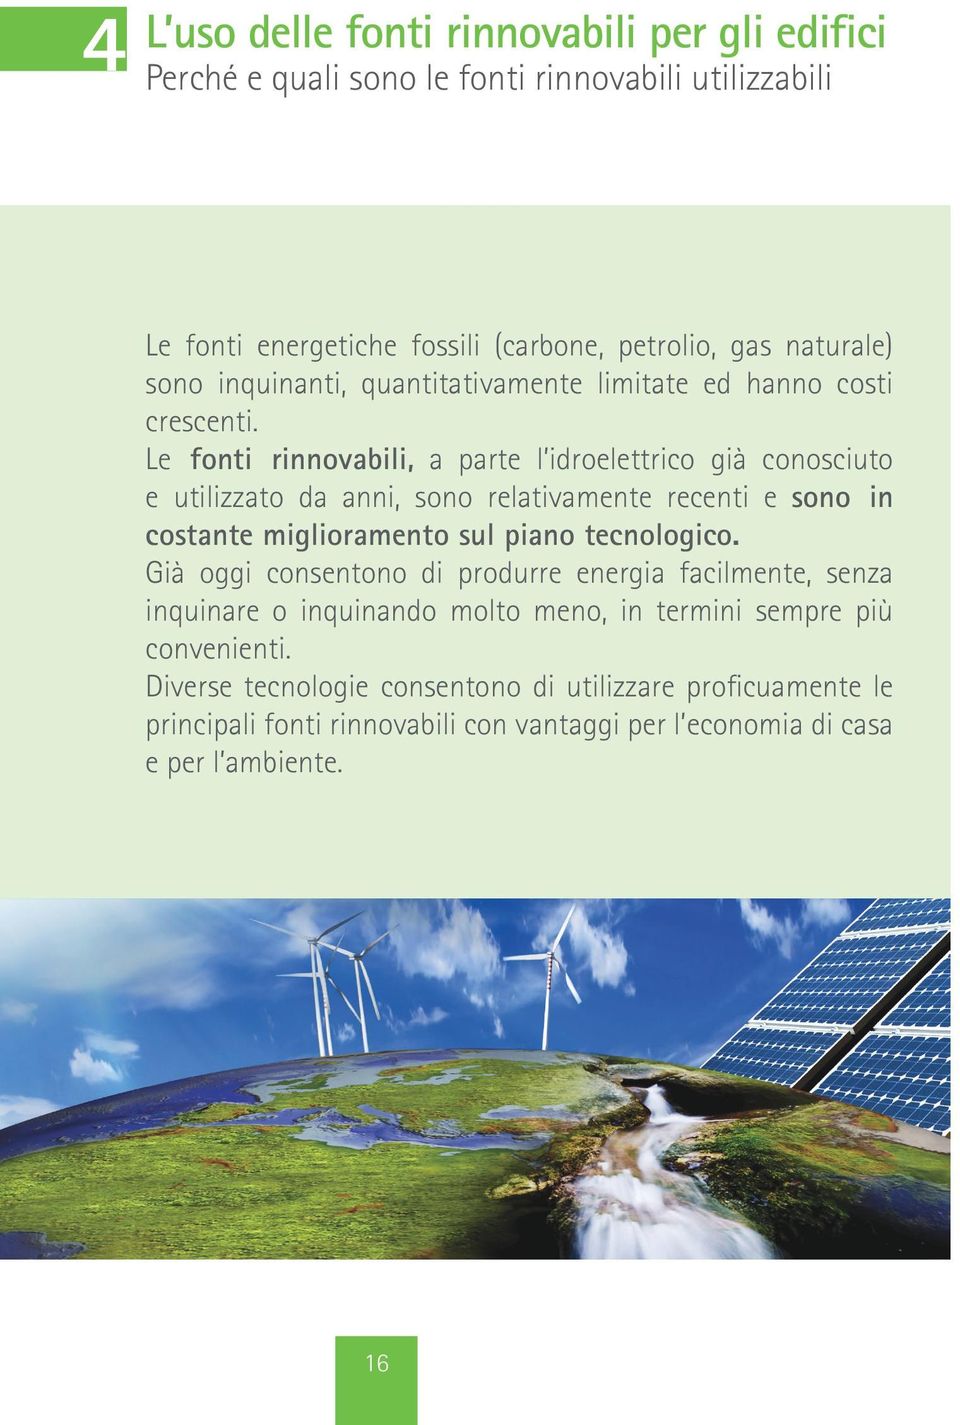 Le fonti rinnovabili, a parte l idroelettrico già conosciuto e utilizzato da anni, sono relativamente recenti e sono in costante miglioramento sul piano tecnologico.